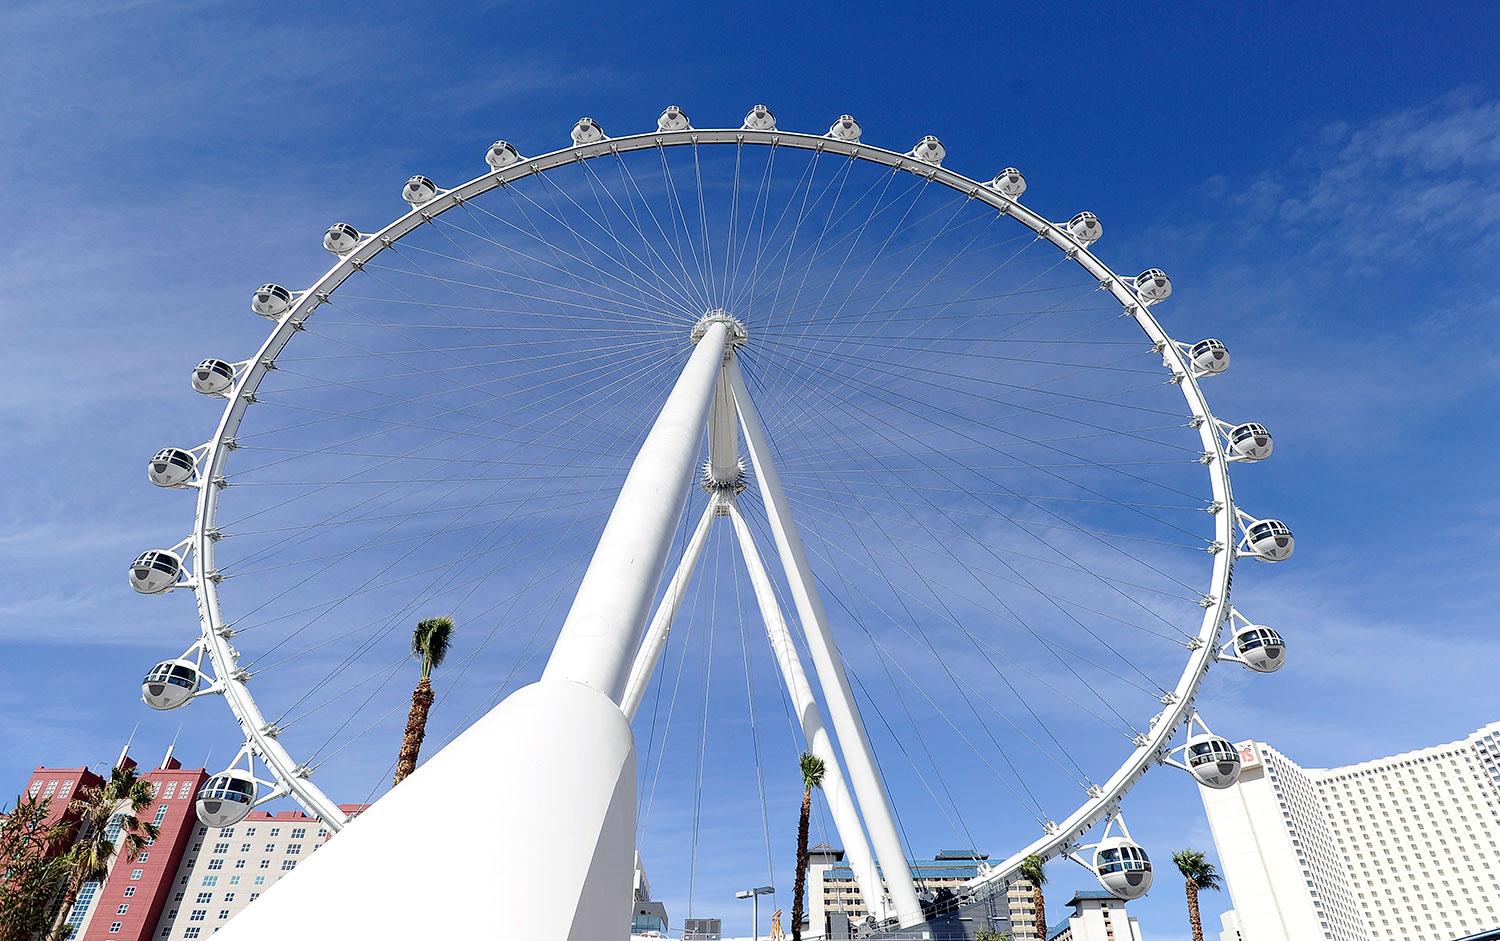 Las Vegas High Roller är 168 meter högt, högre än exempelvis London Eye.